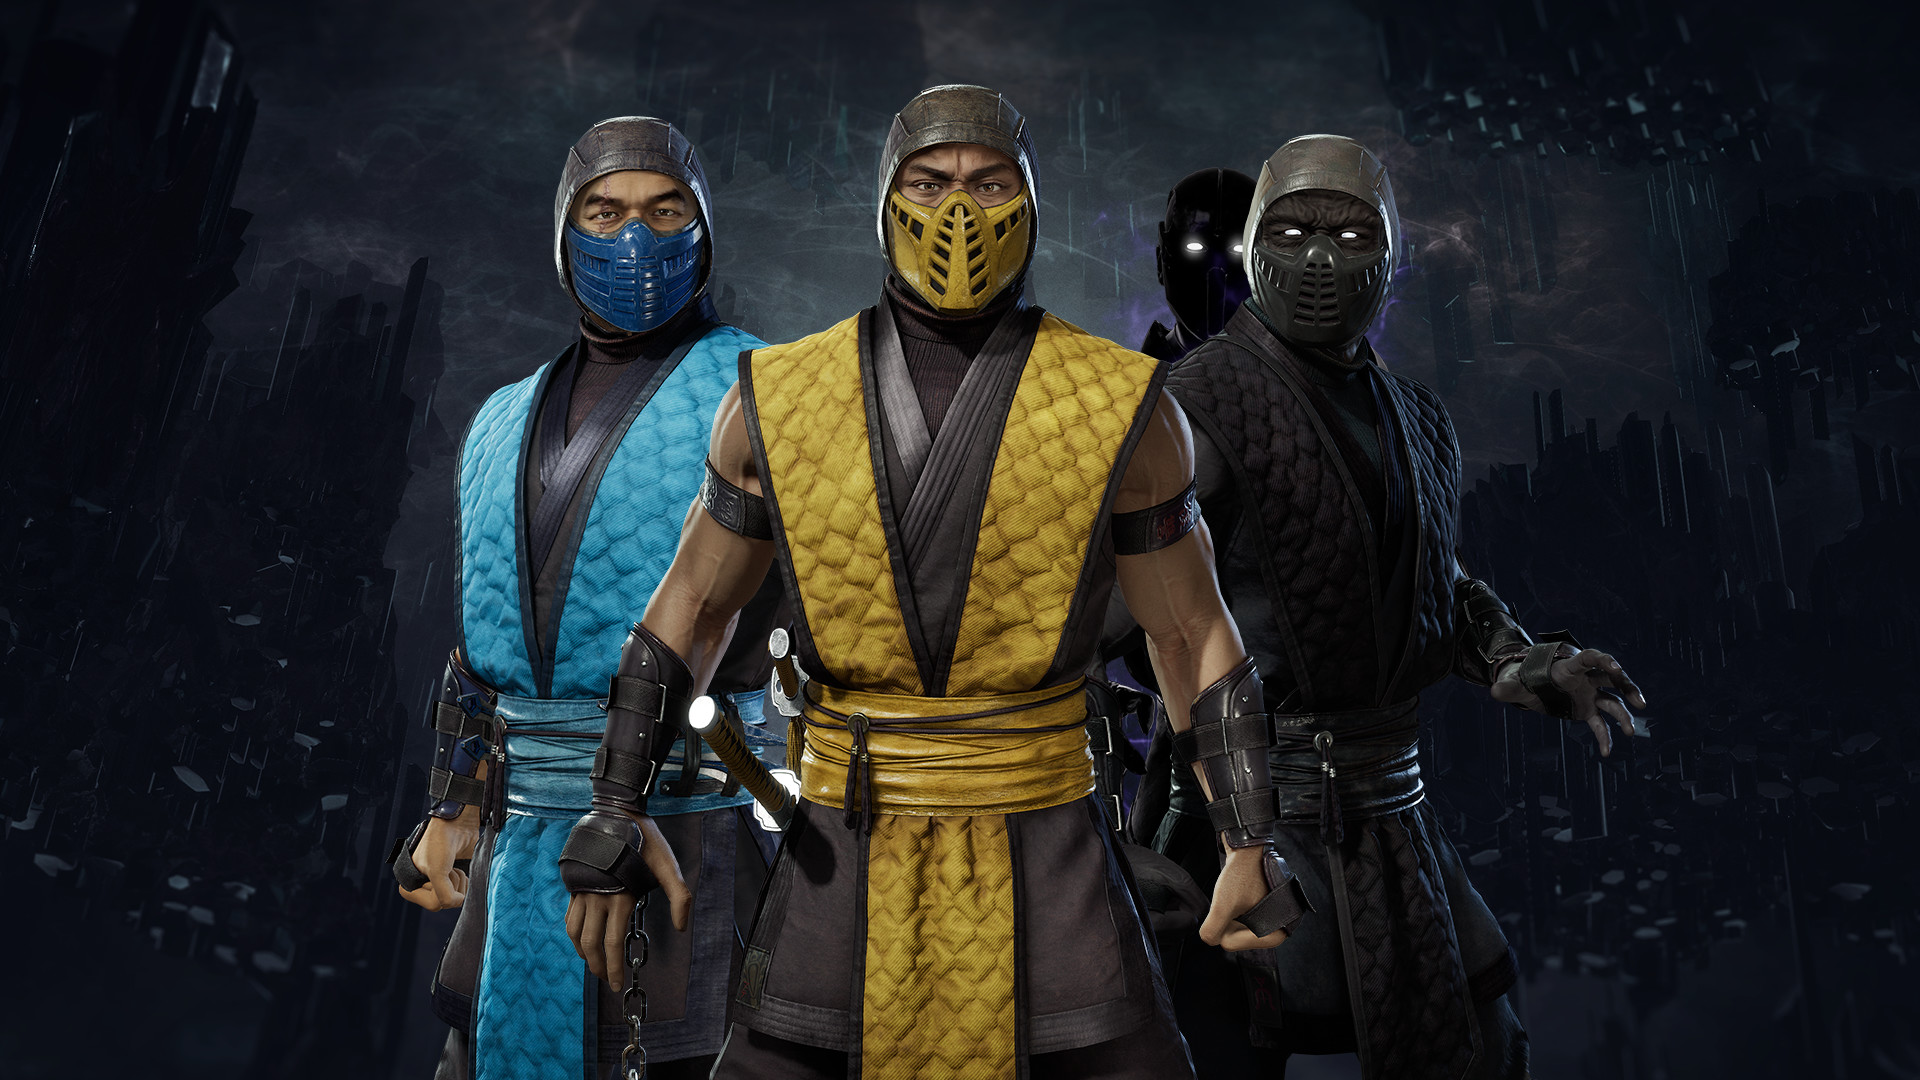 Mortal Kombat 11 Klassic Arcade Ninja Skin Pack 1 Featured Screenshot #1